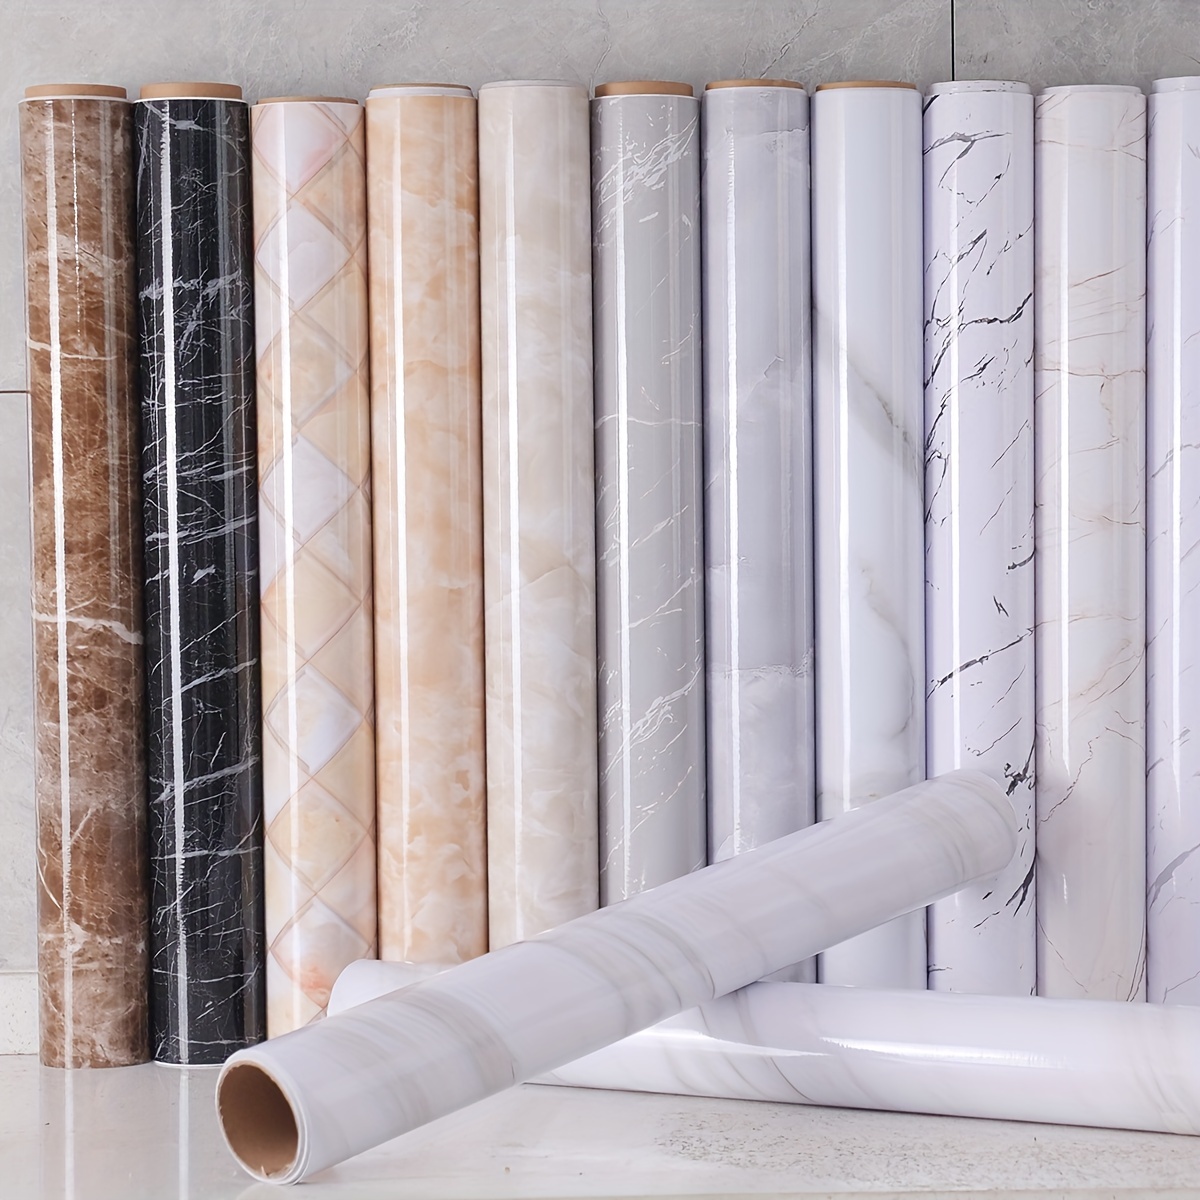  Papel pintado de lino beige de PVC, autoadhesivo, despegar y  pegar, papel pintado de imitación de tela de vinilo adhesivo de pared de  color sólido para decorar muebles de dormitorio (15.8